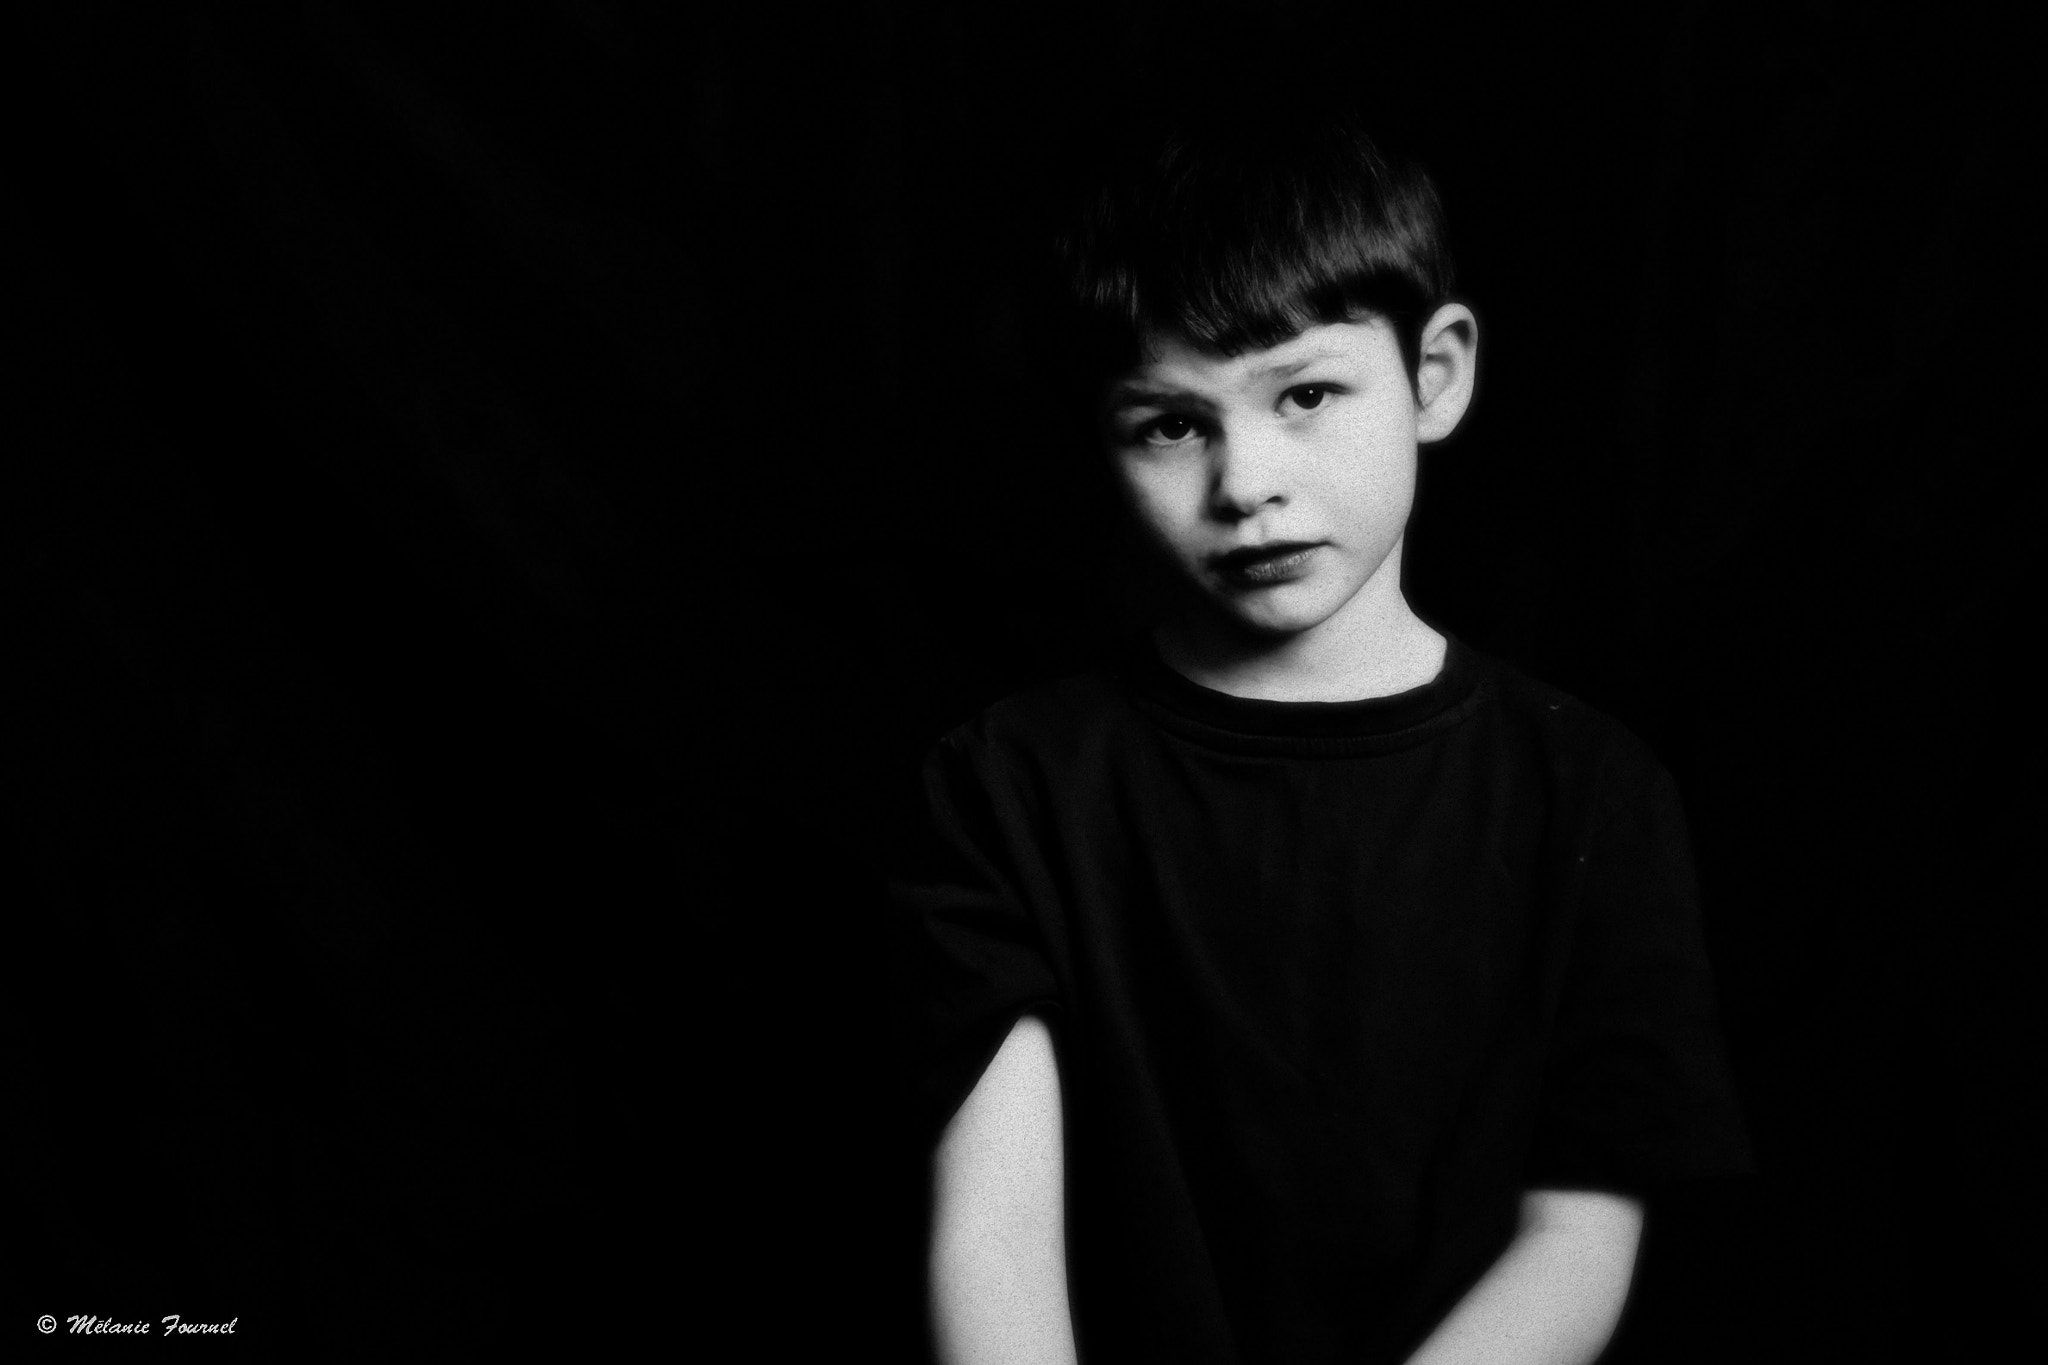 Canon EOS 50D sample photo. A little boy photography